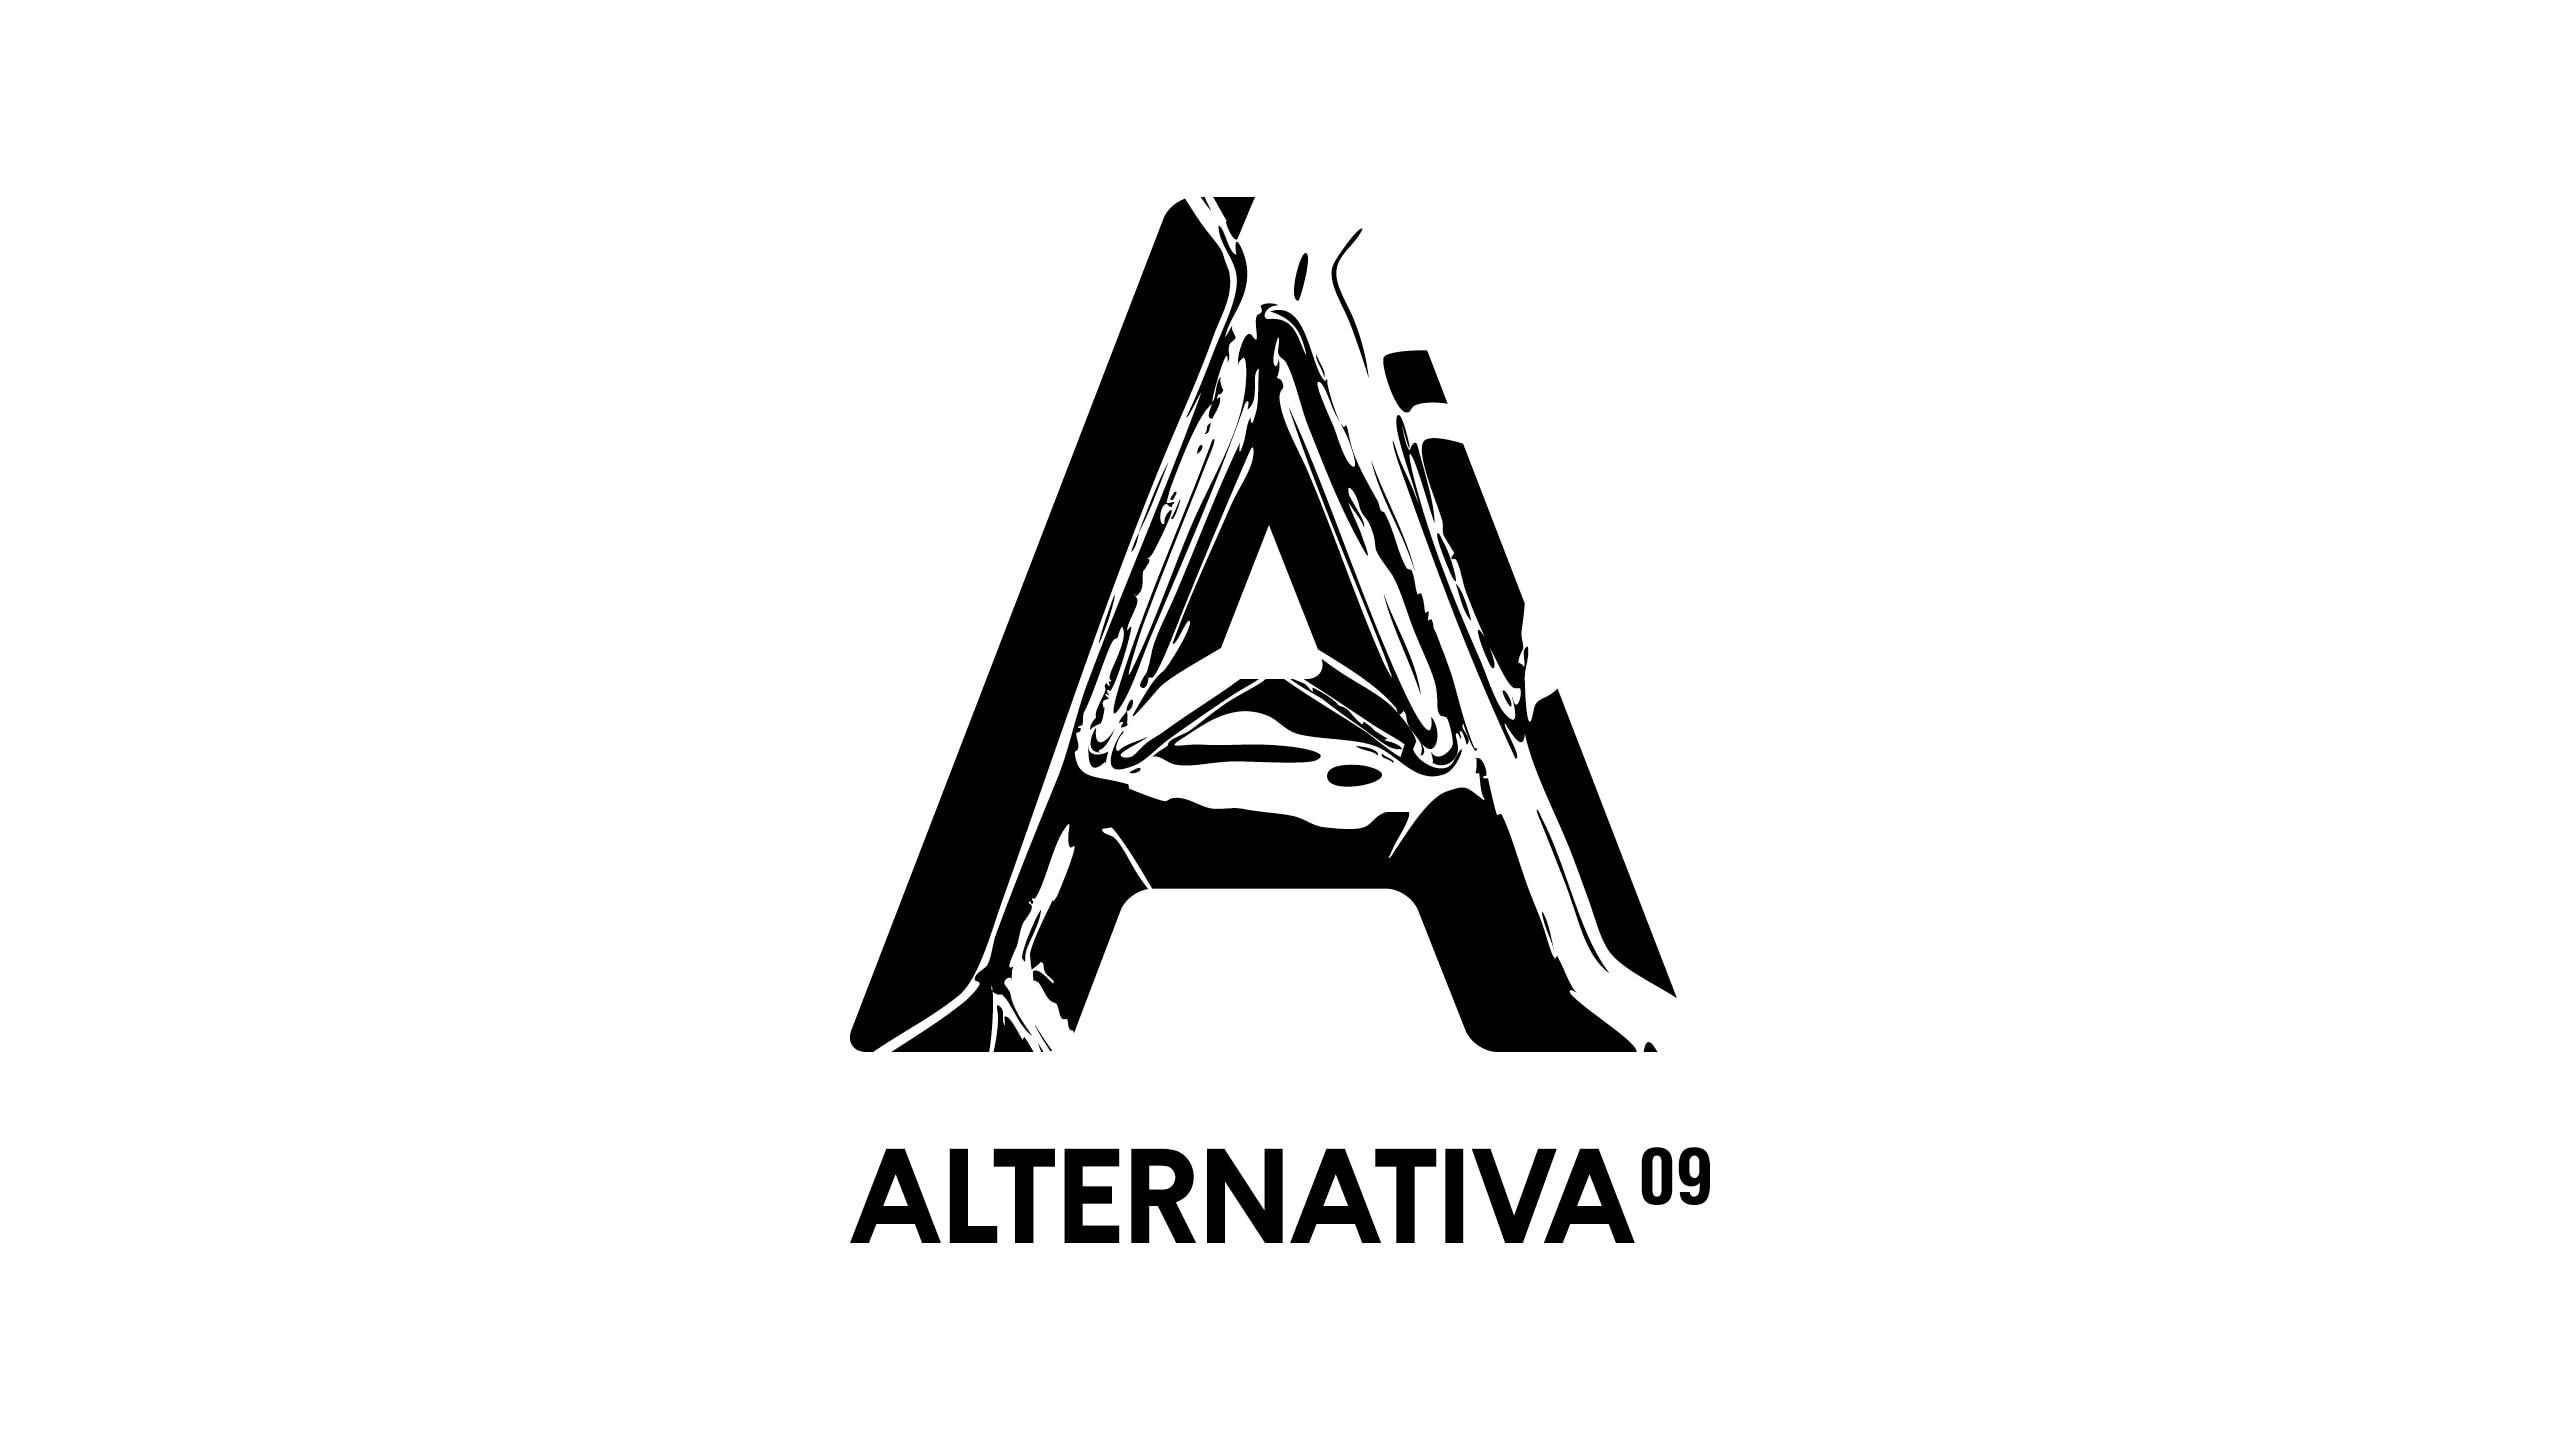 Alternativa_2009_3